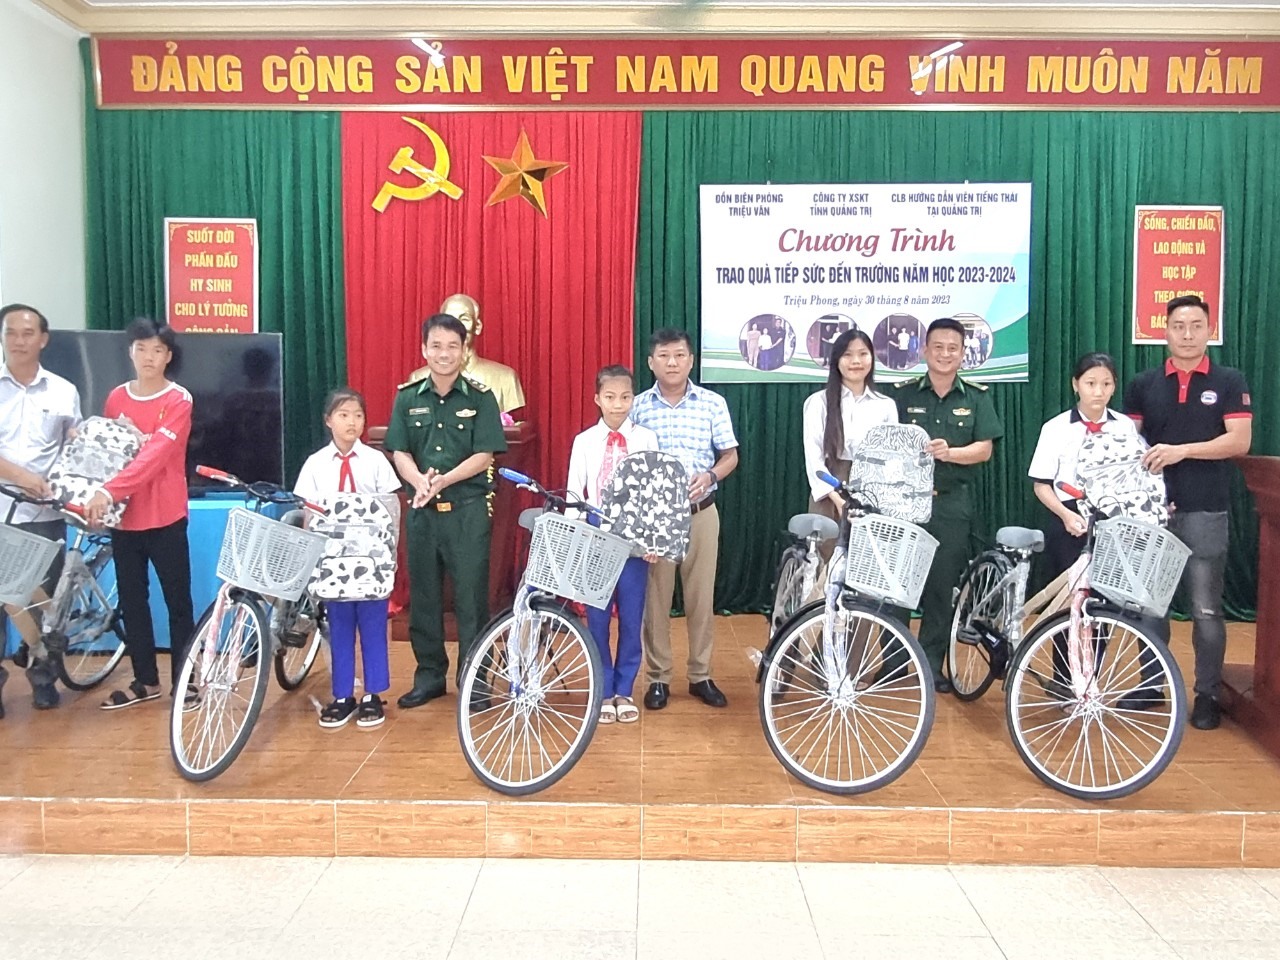 Đại tá Ngô Xuân Thường - Phó Chính ủy BĐBP tỉnh,cùng các đại biểu và Nhà tài trợ trao quànăm học mới cho các cháu.